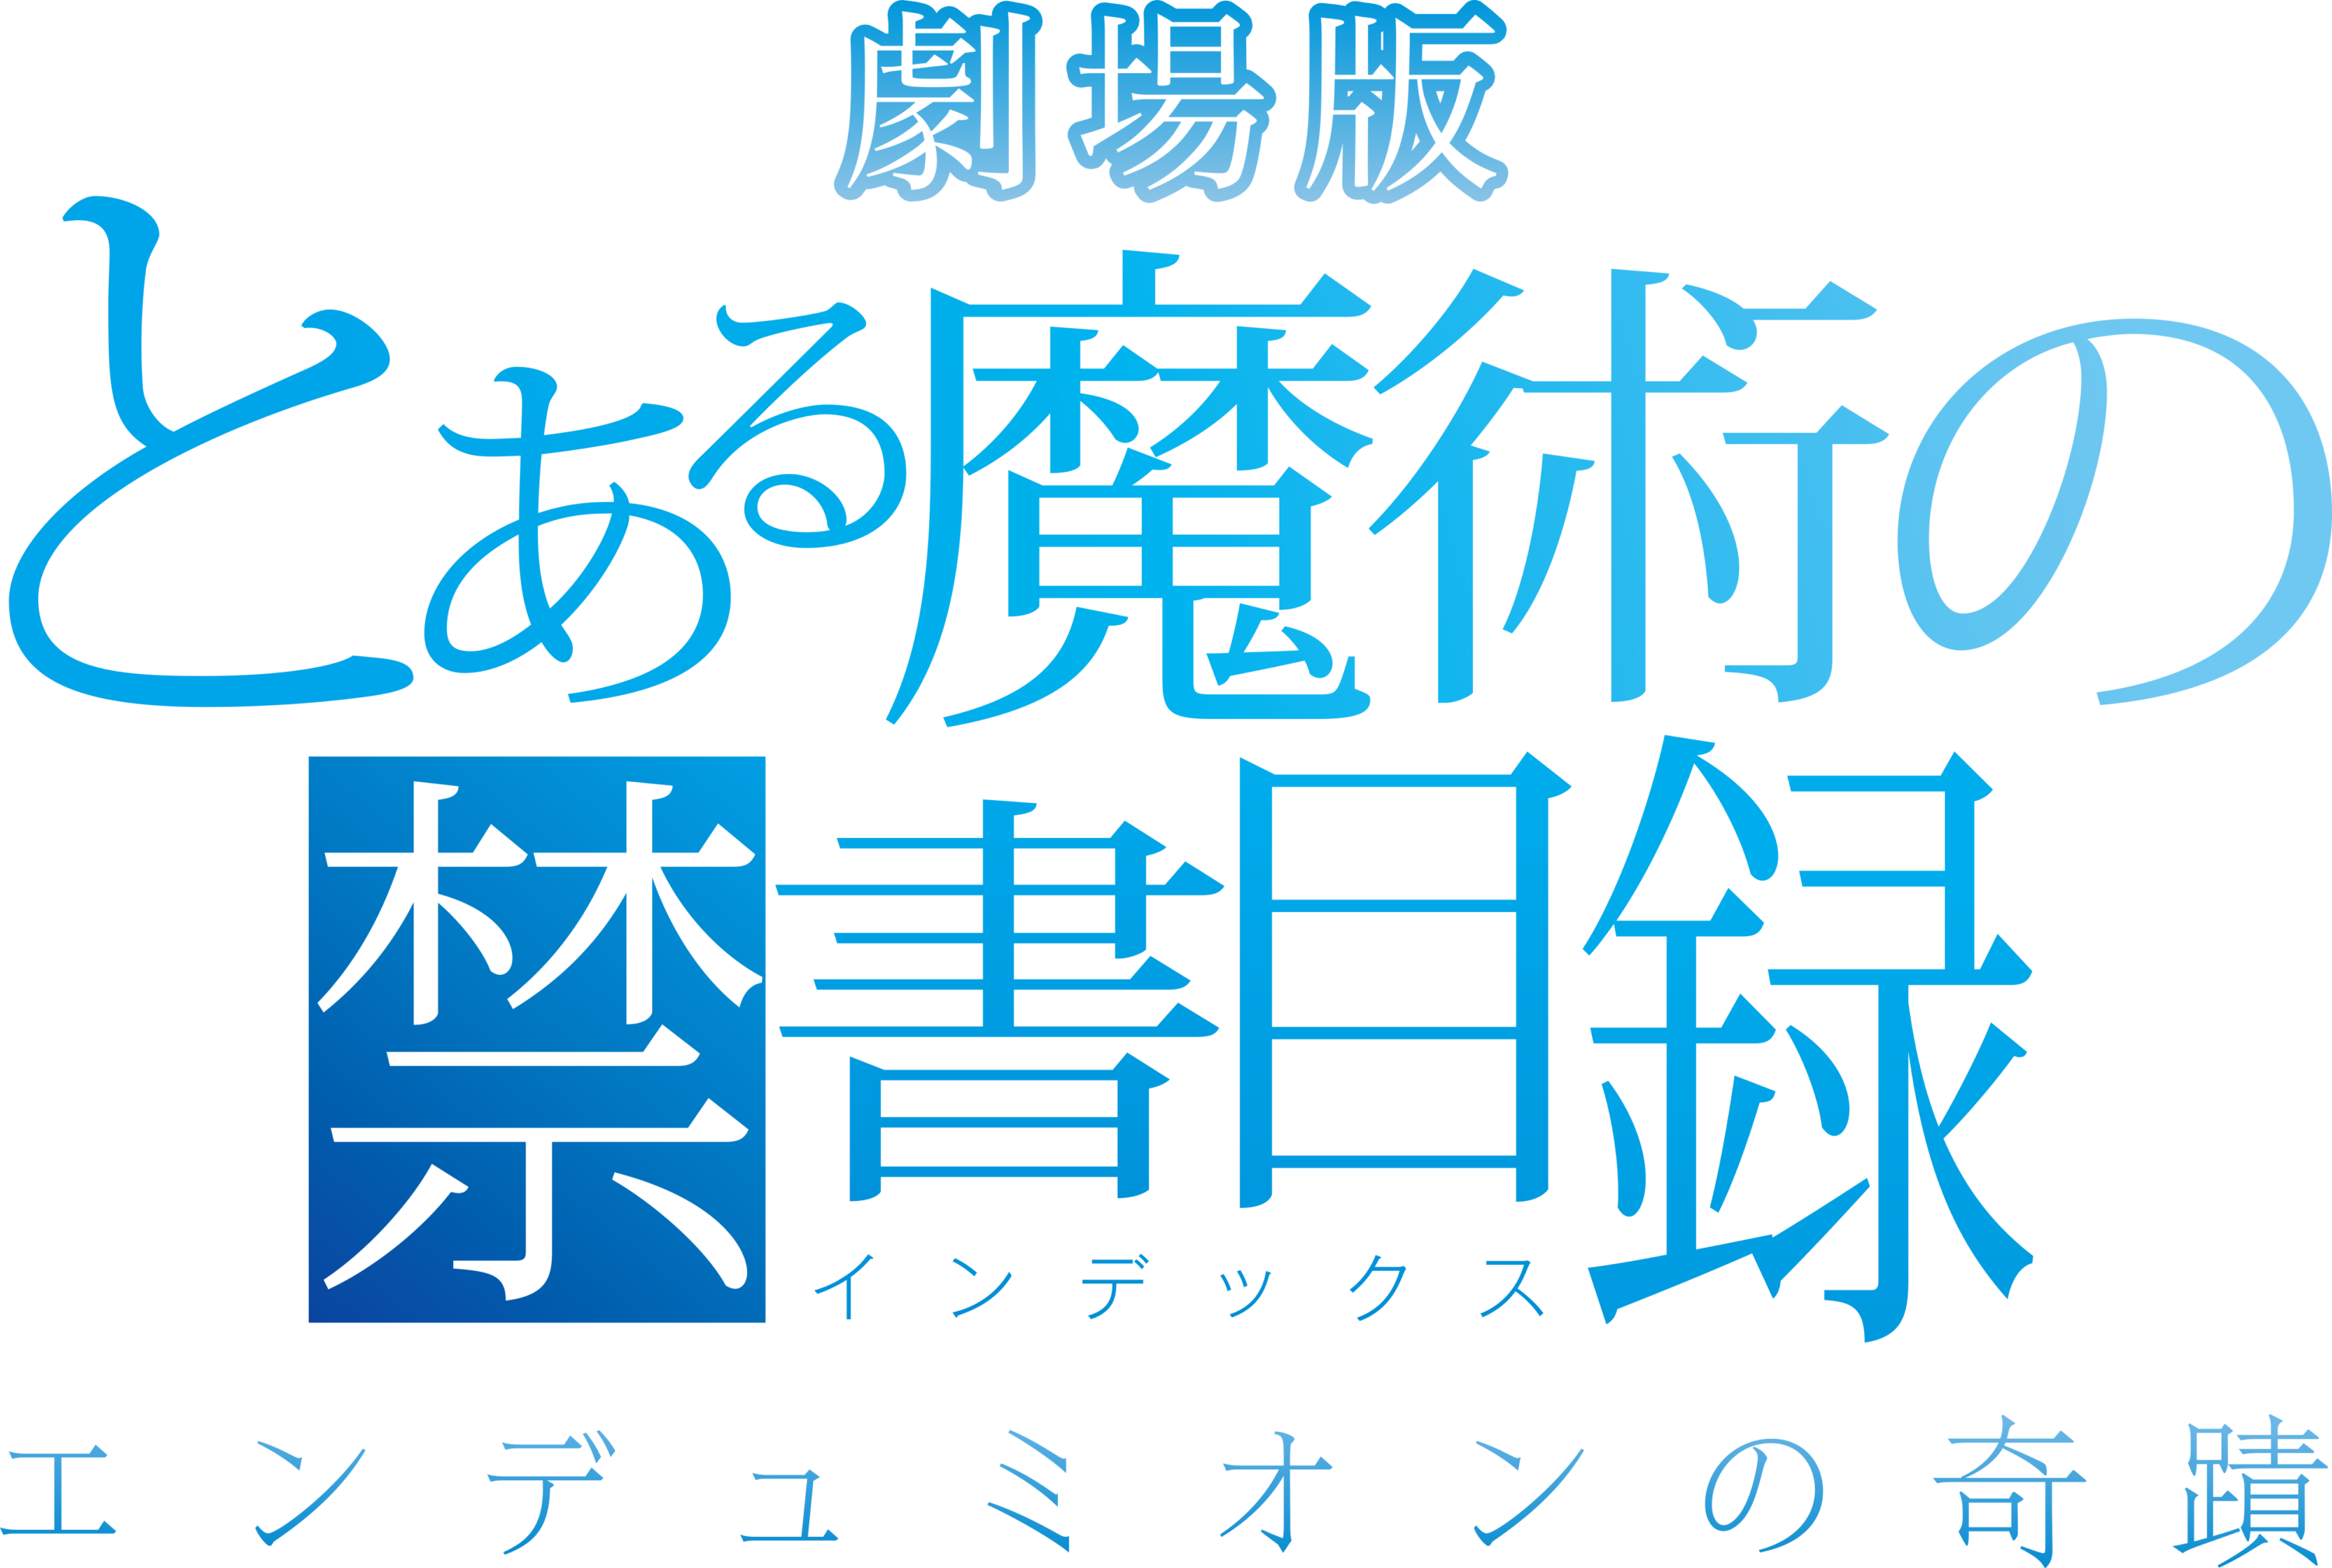 Gekijoban Toaru Majutsu no Index Endymion no Kiseki Logo